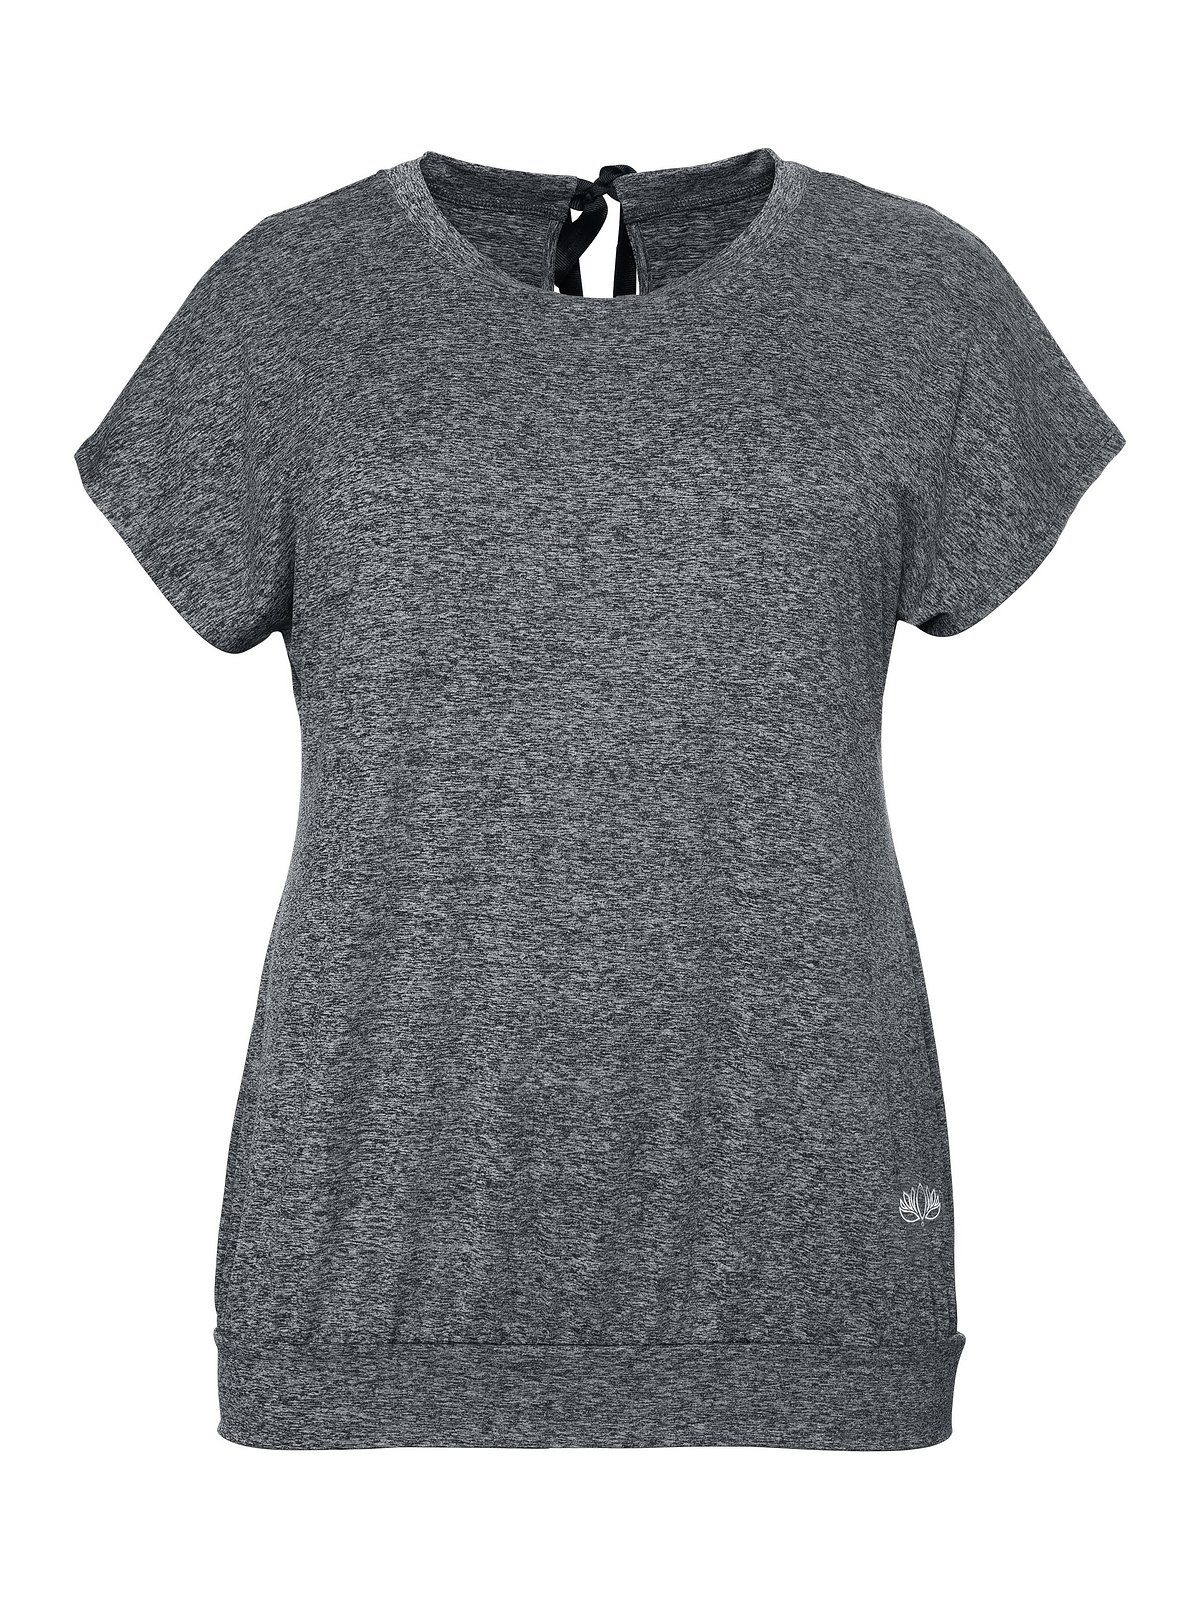 Sheego T-Shirt Große Größen aus grau Funktionsmaterial meliert